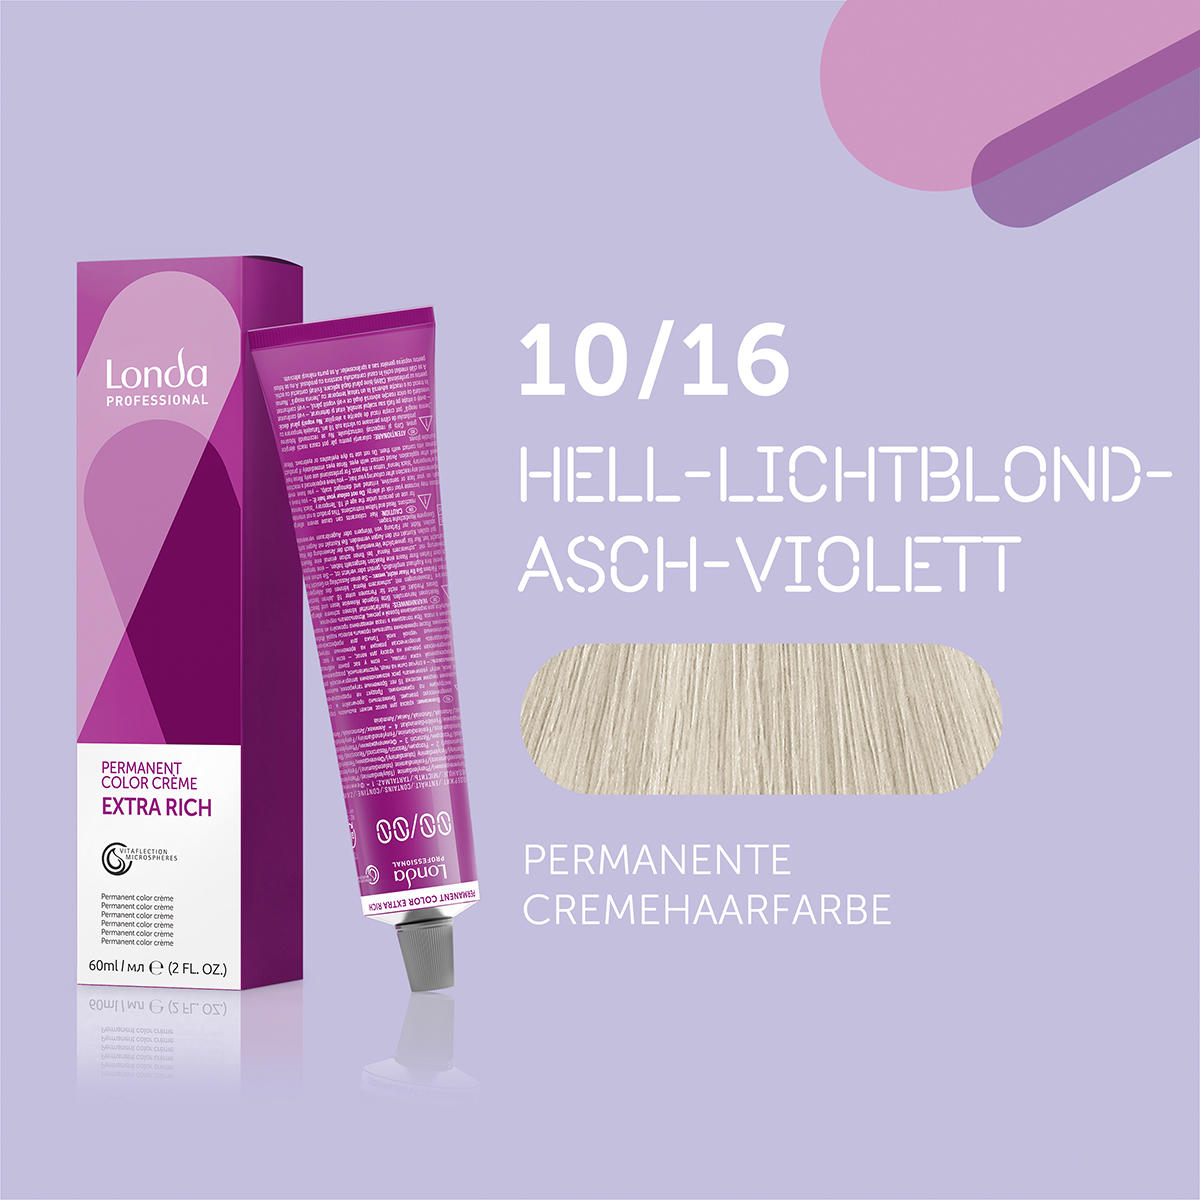 Londa Permanente Cremehaarfarbe Extra Rich 10/16 Hell Lichtblond Asch Violett, Tube 60 ml